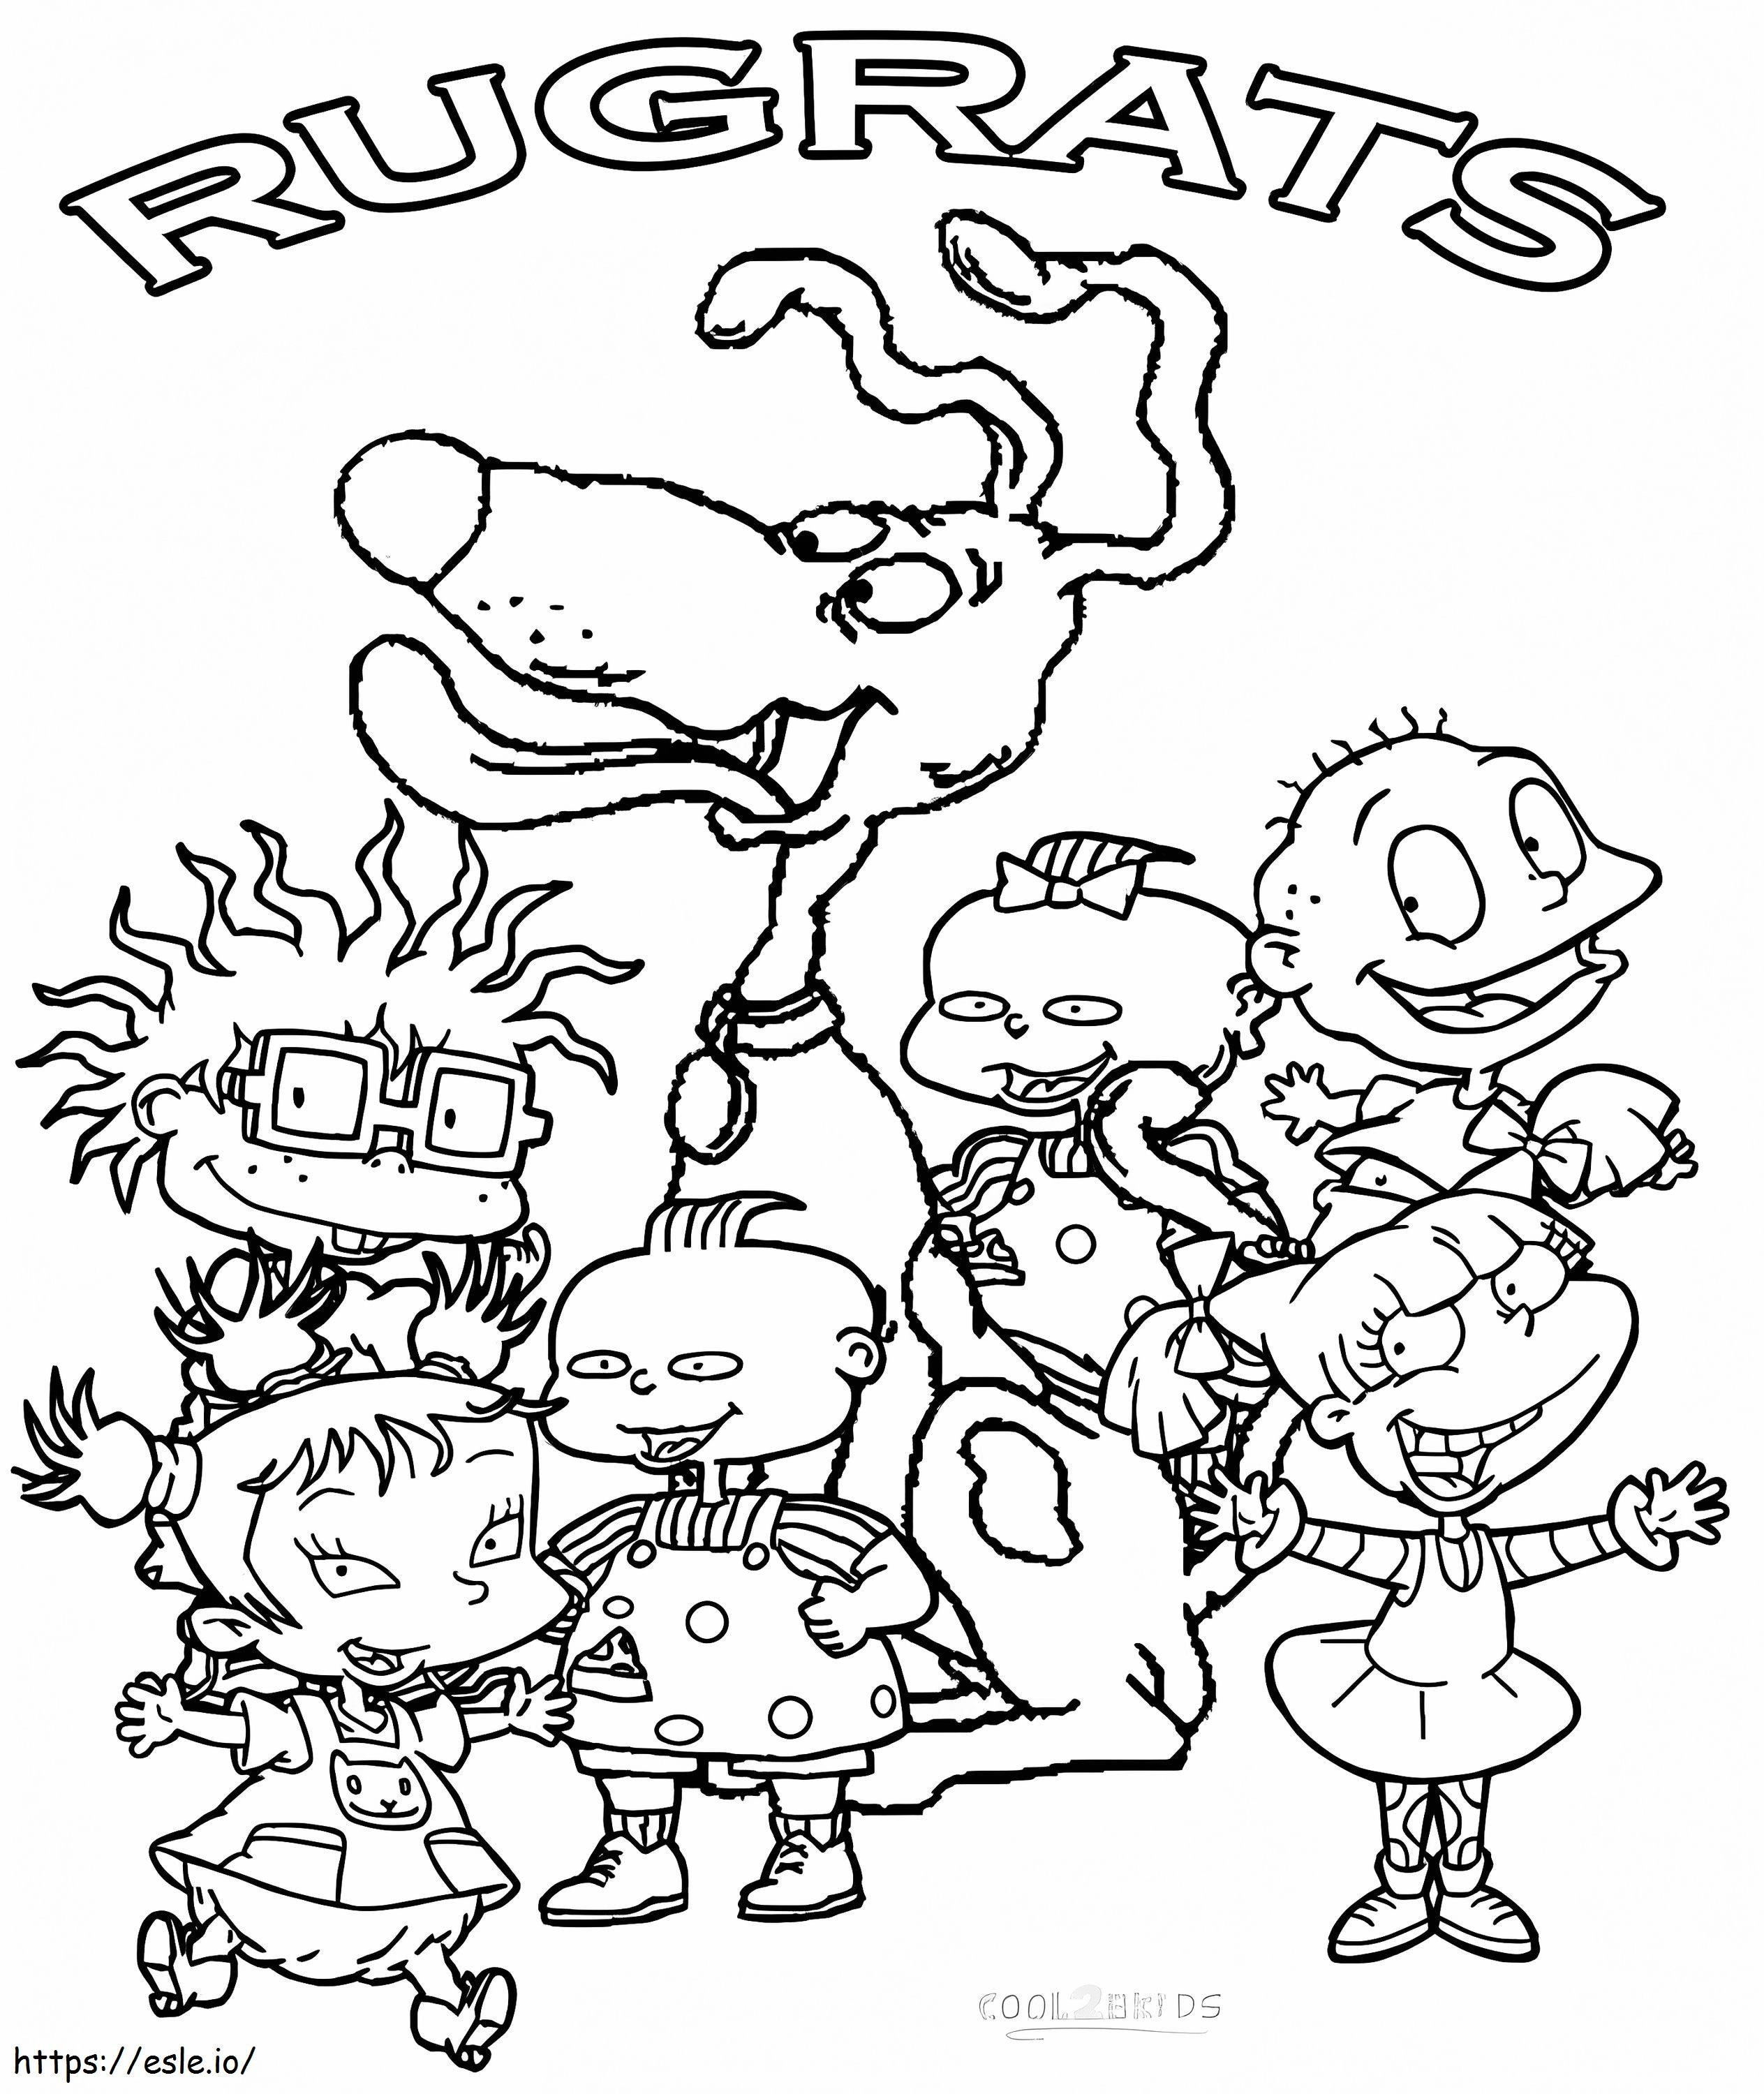 Rugrats-personages kleurplaat kleurplaat